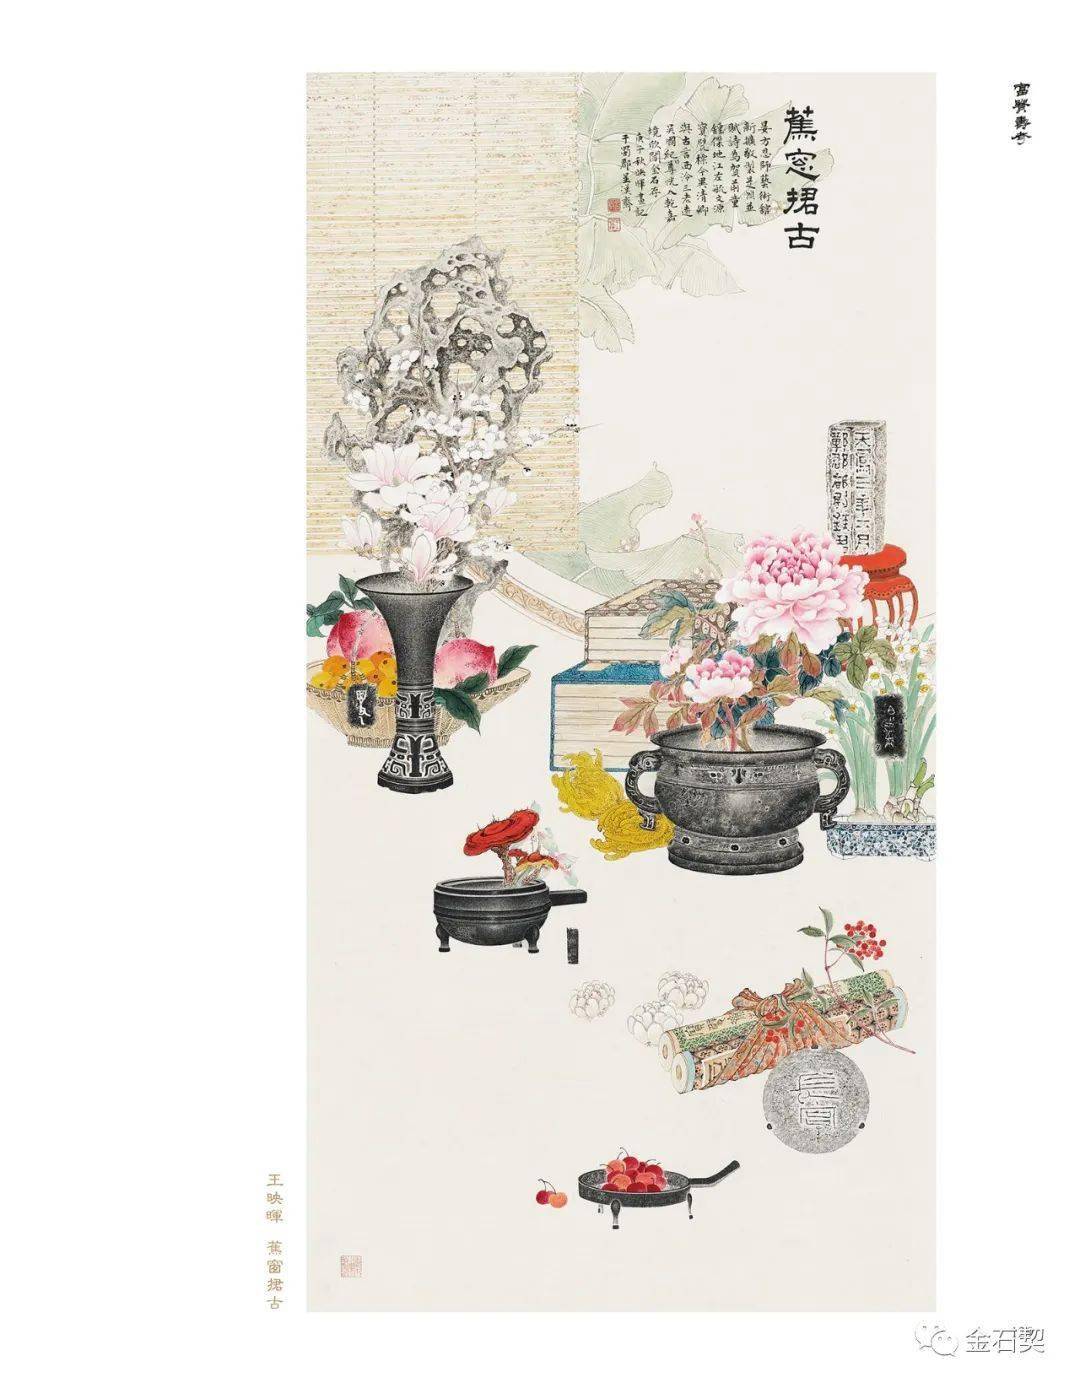 全国首部金石博古画专著 |《富贵寿考——中国金石博古画图说》出版